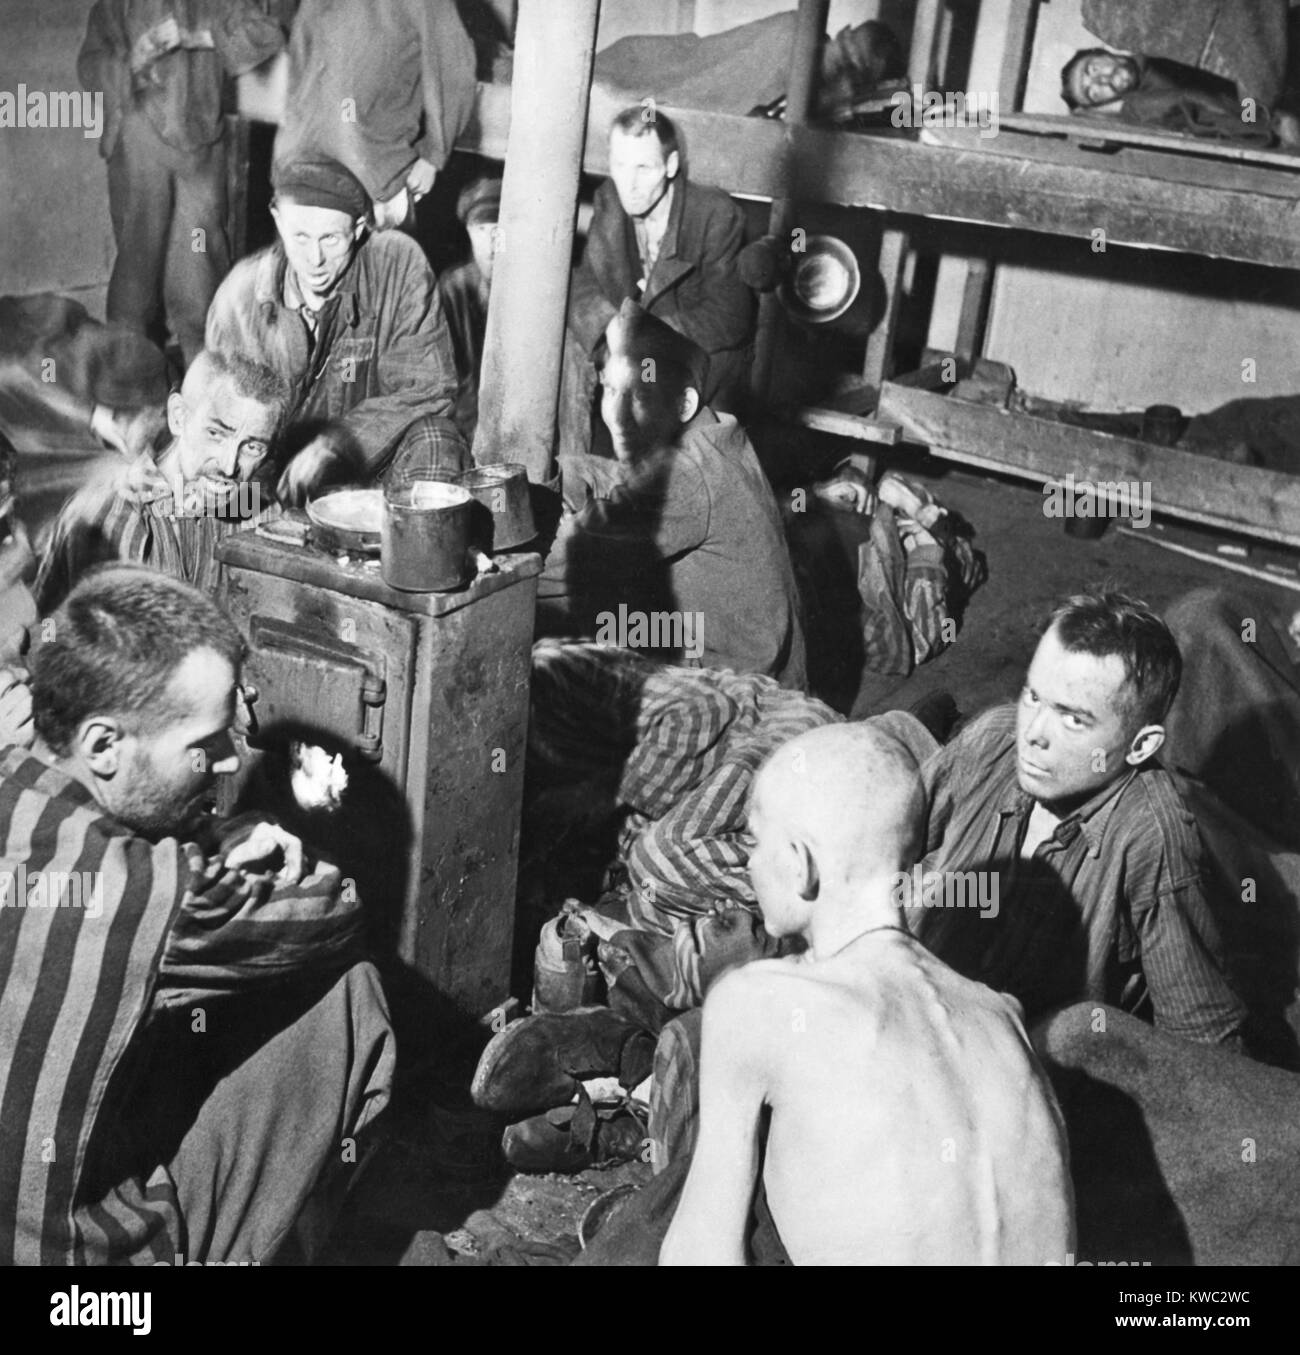 Camp de Prisonniers Sandbostel survivants s'asseoir autour d'une cuisinière feu après la libération, le 30 avril 1945. Ils étaient parmi les 8000 prisonniers politiques et civiles logées séparément des traités et bien pire que 15 000 prisonniers militaires alliées. L'homme sur le plancher à l'arrière de cette photo est mort, mais les autres ne pas en tenir compte. (BSLOC   2015 13 12) Banque D'Images